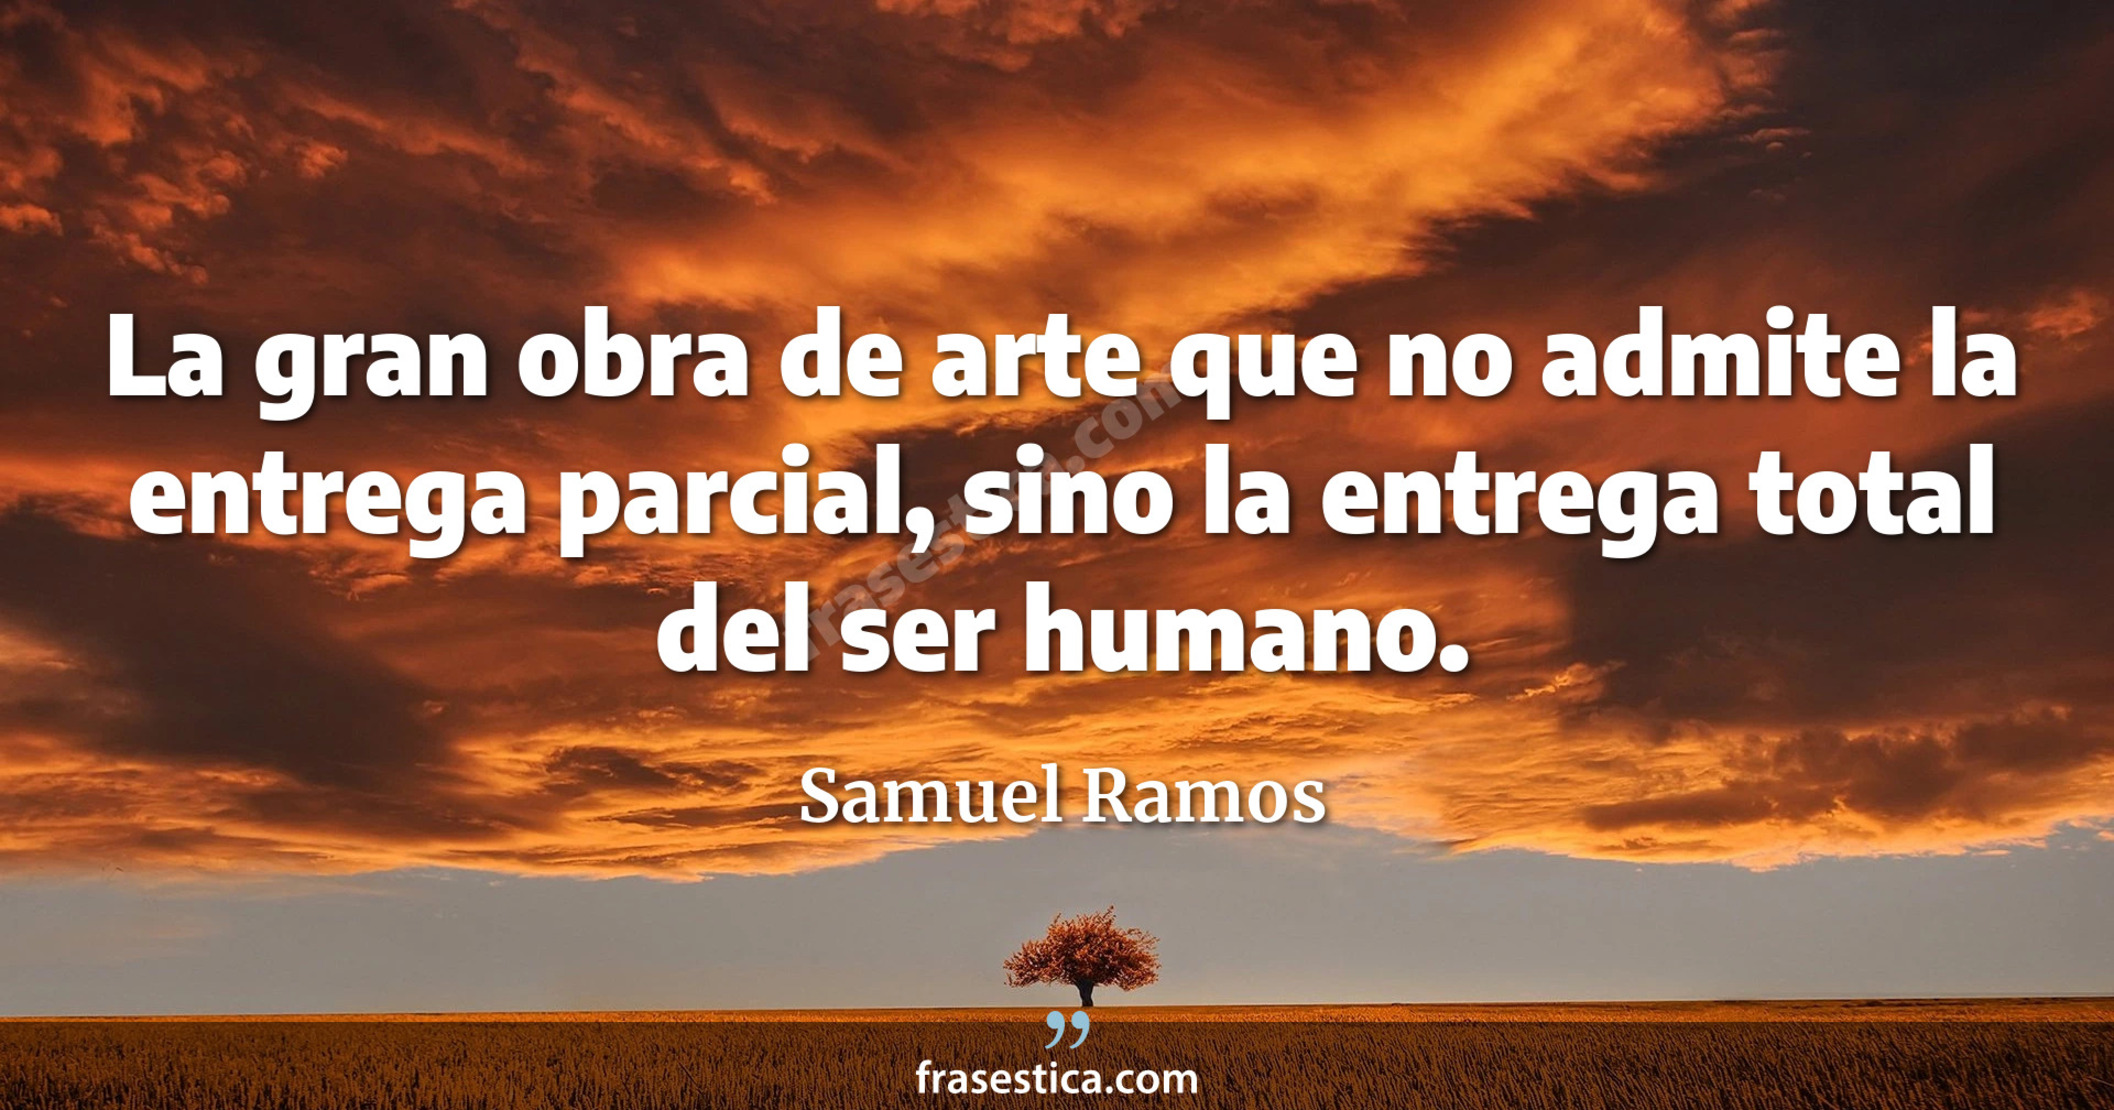 La gran obra de arte que no admite la entrega parcial, sino la entrega total del ser humano. - Samuel Ramos